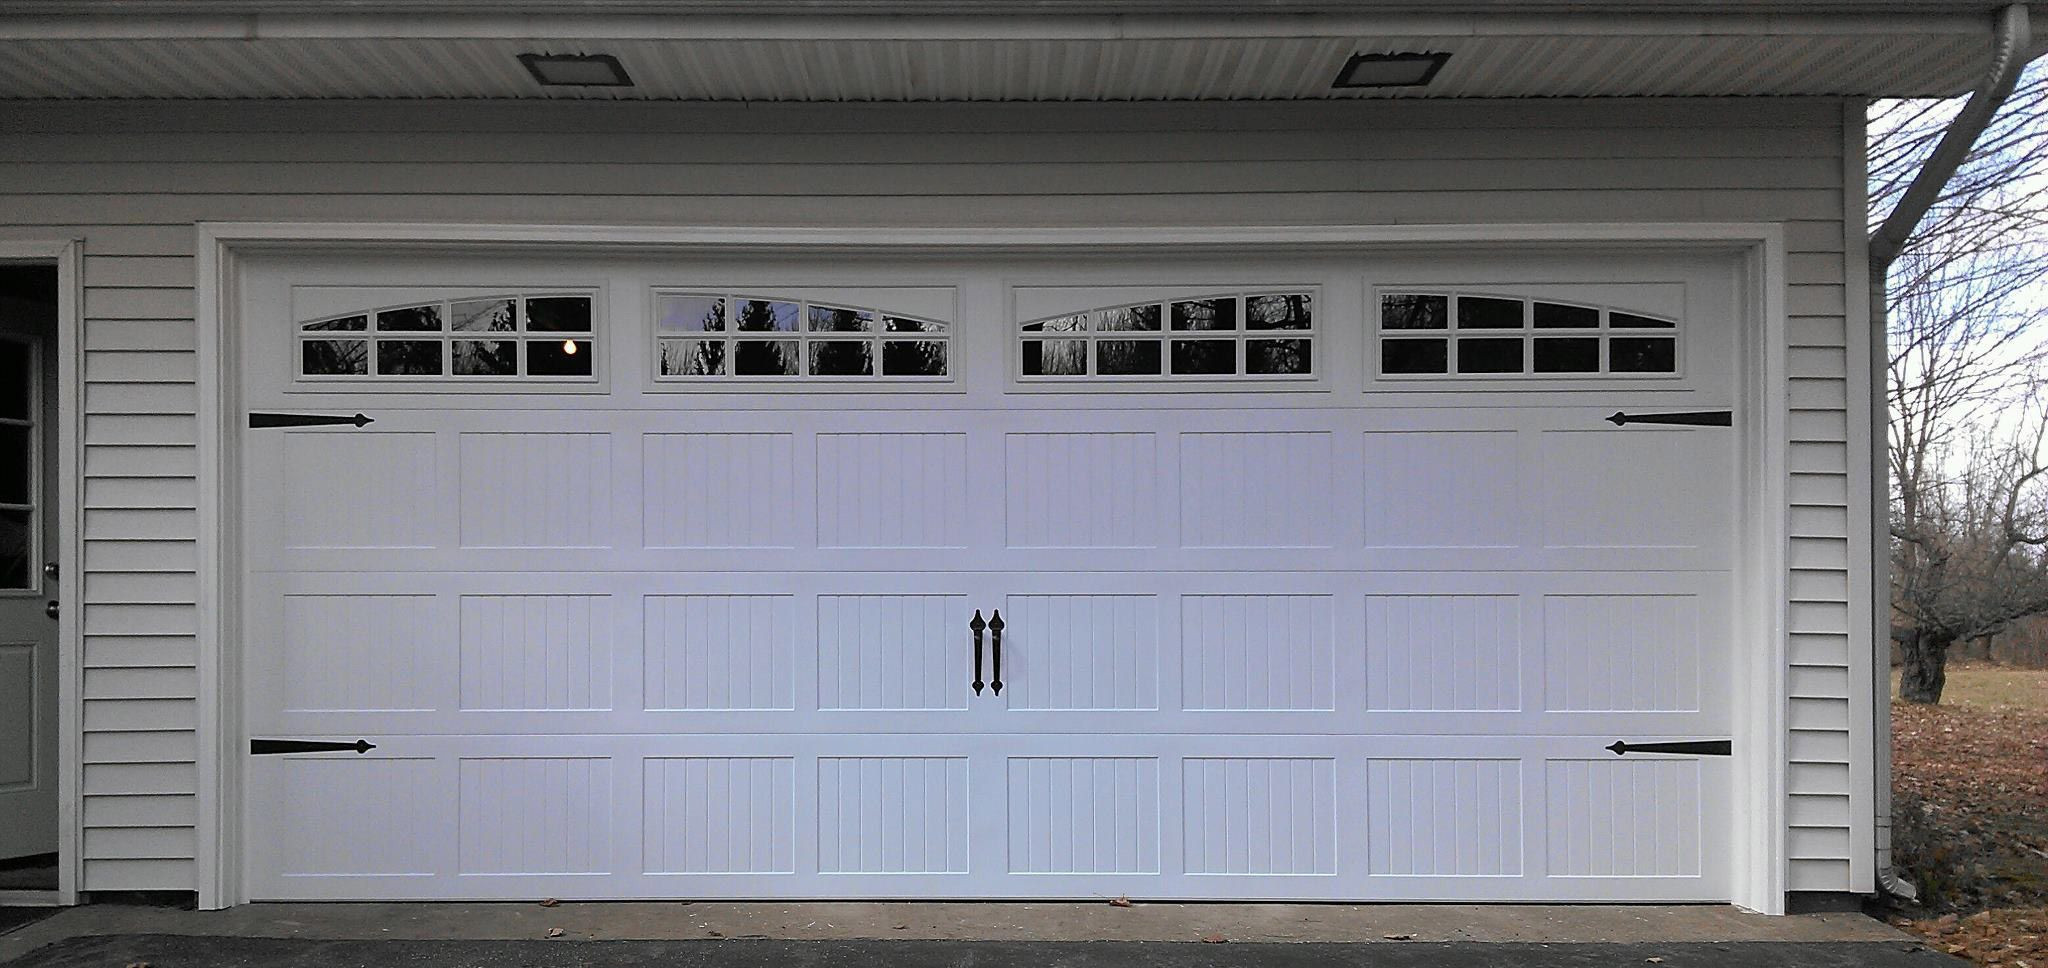 Garage Door Window Panels
 Garage Door Window Inserts Home Depot — All About Home